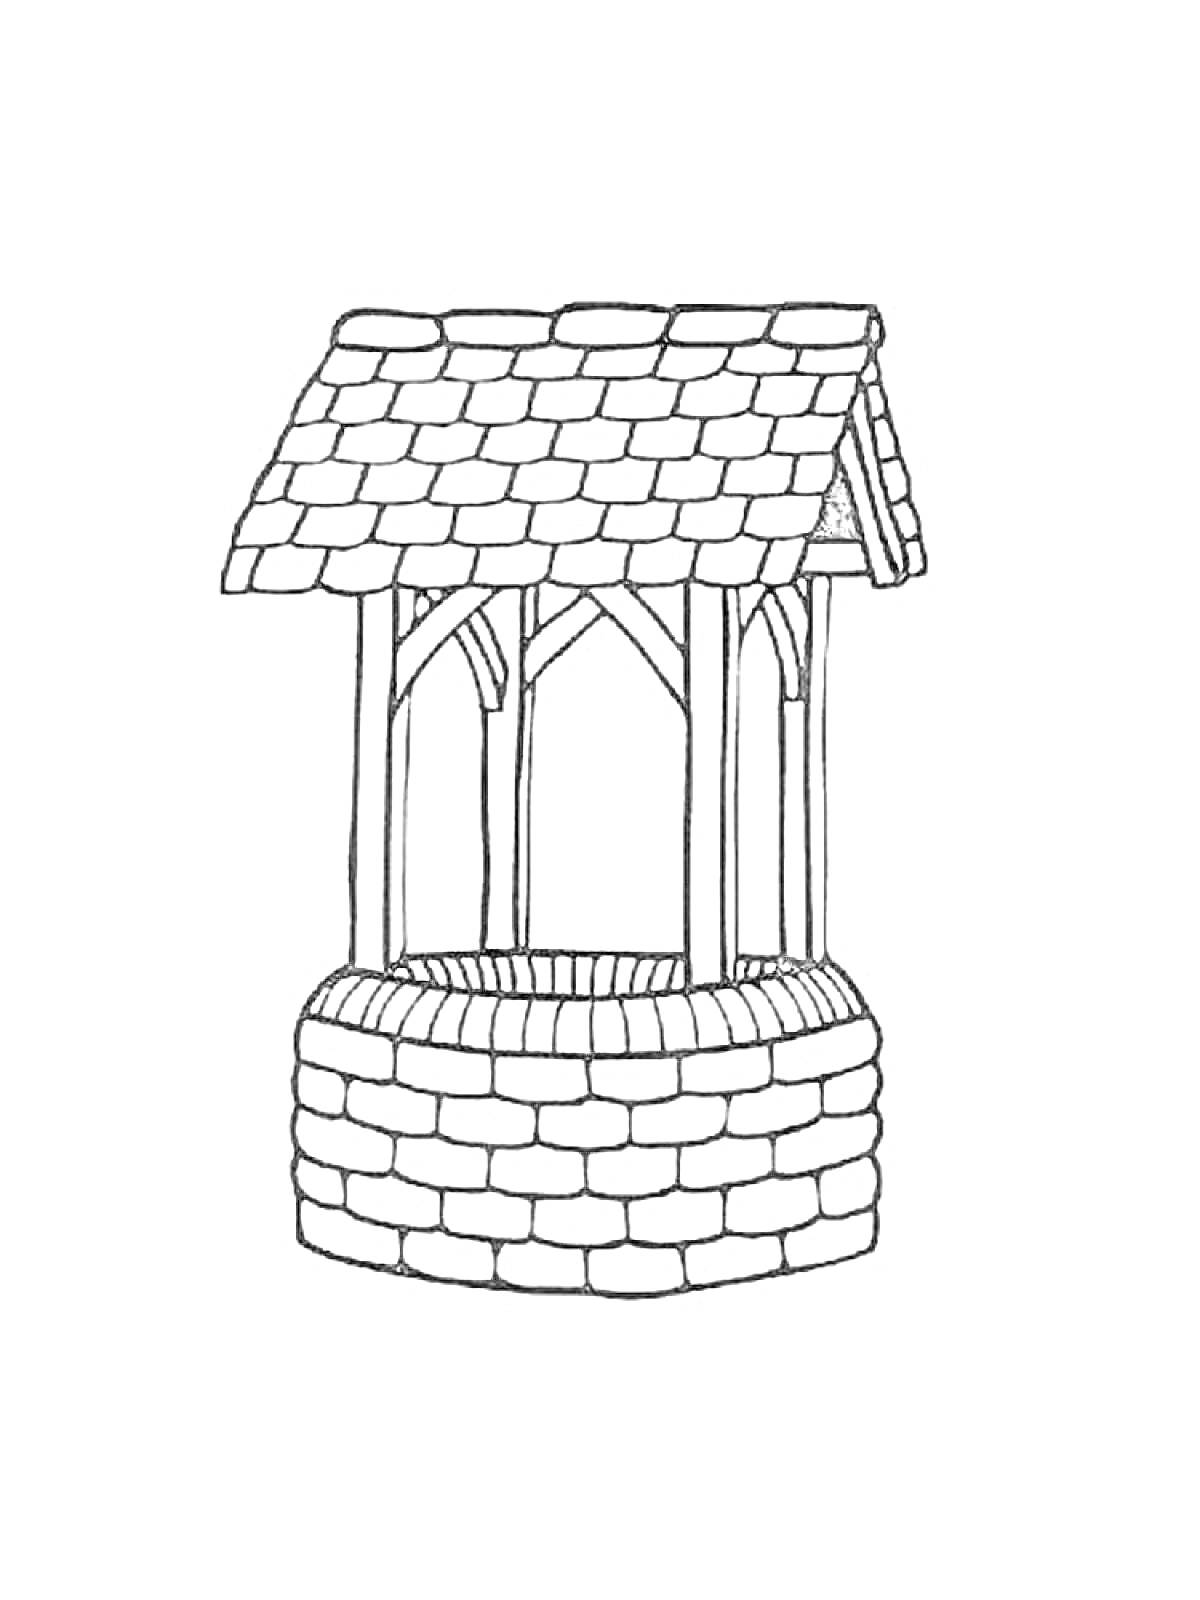 Раскраска Колодец с крышей и кирпичной кладкой